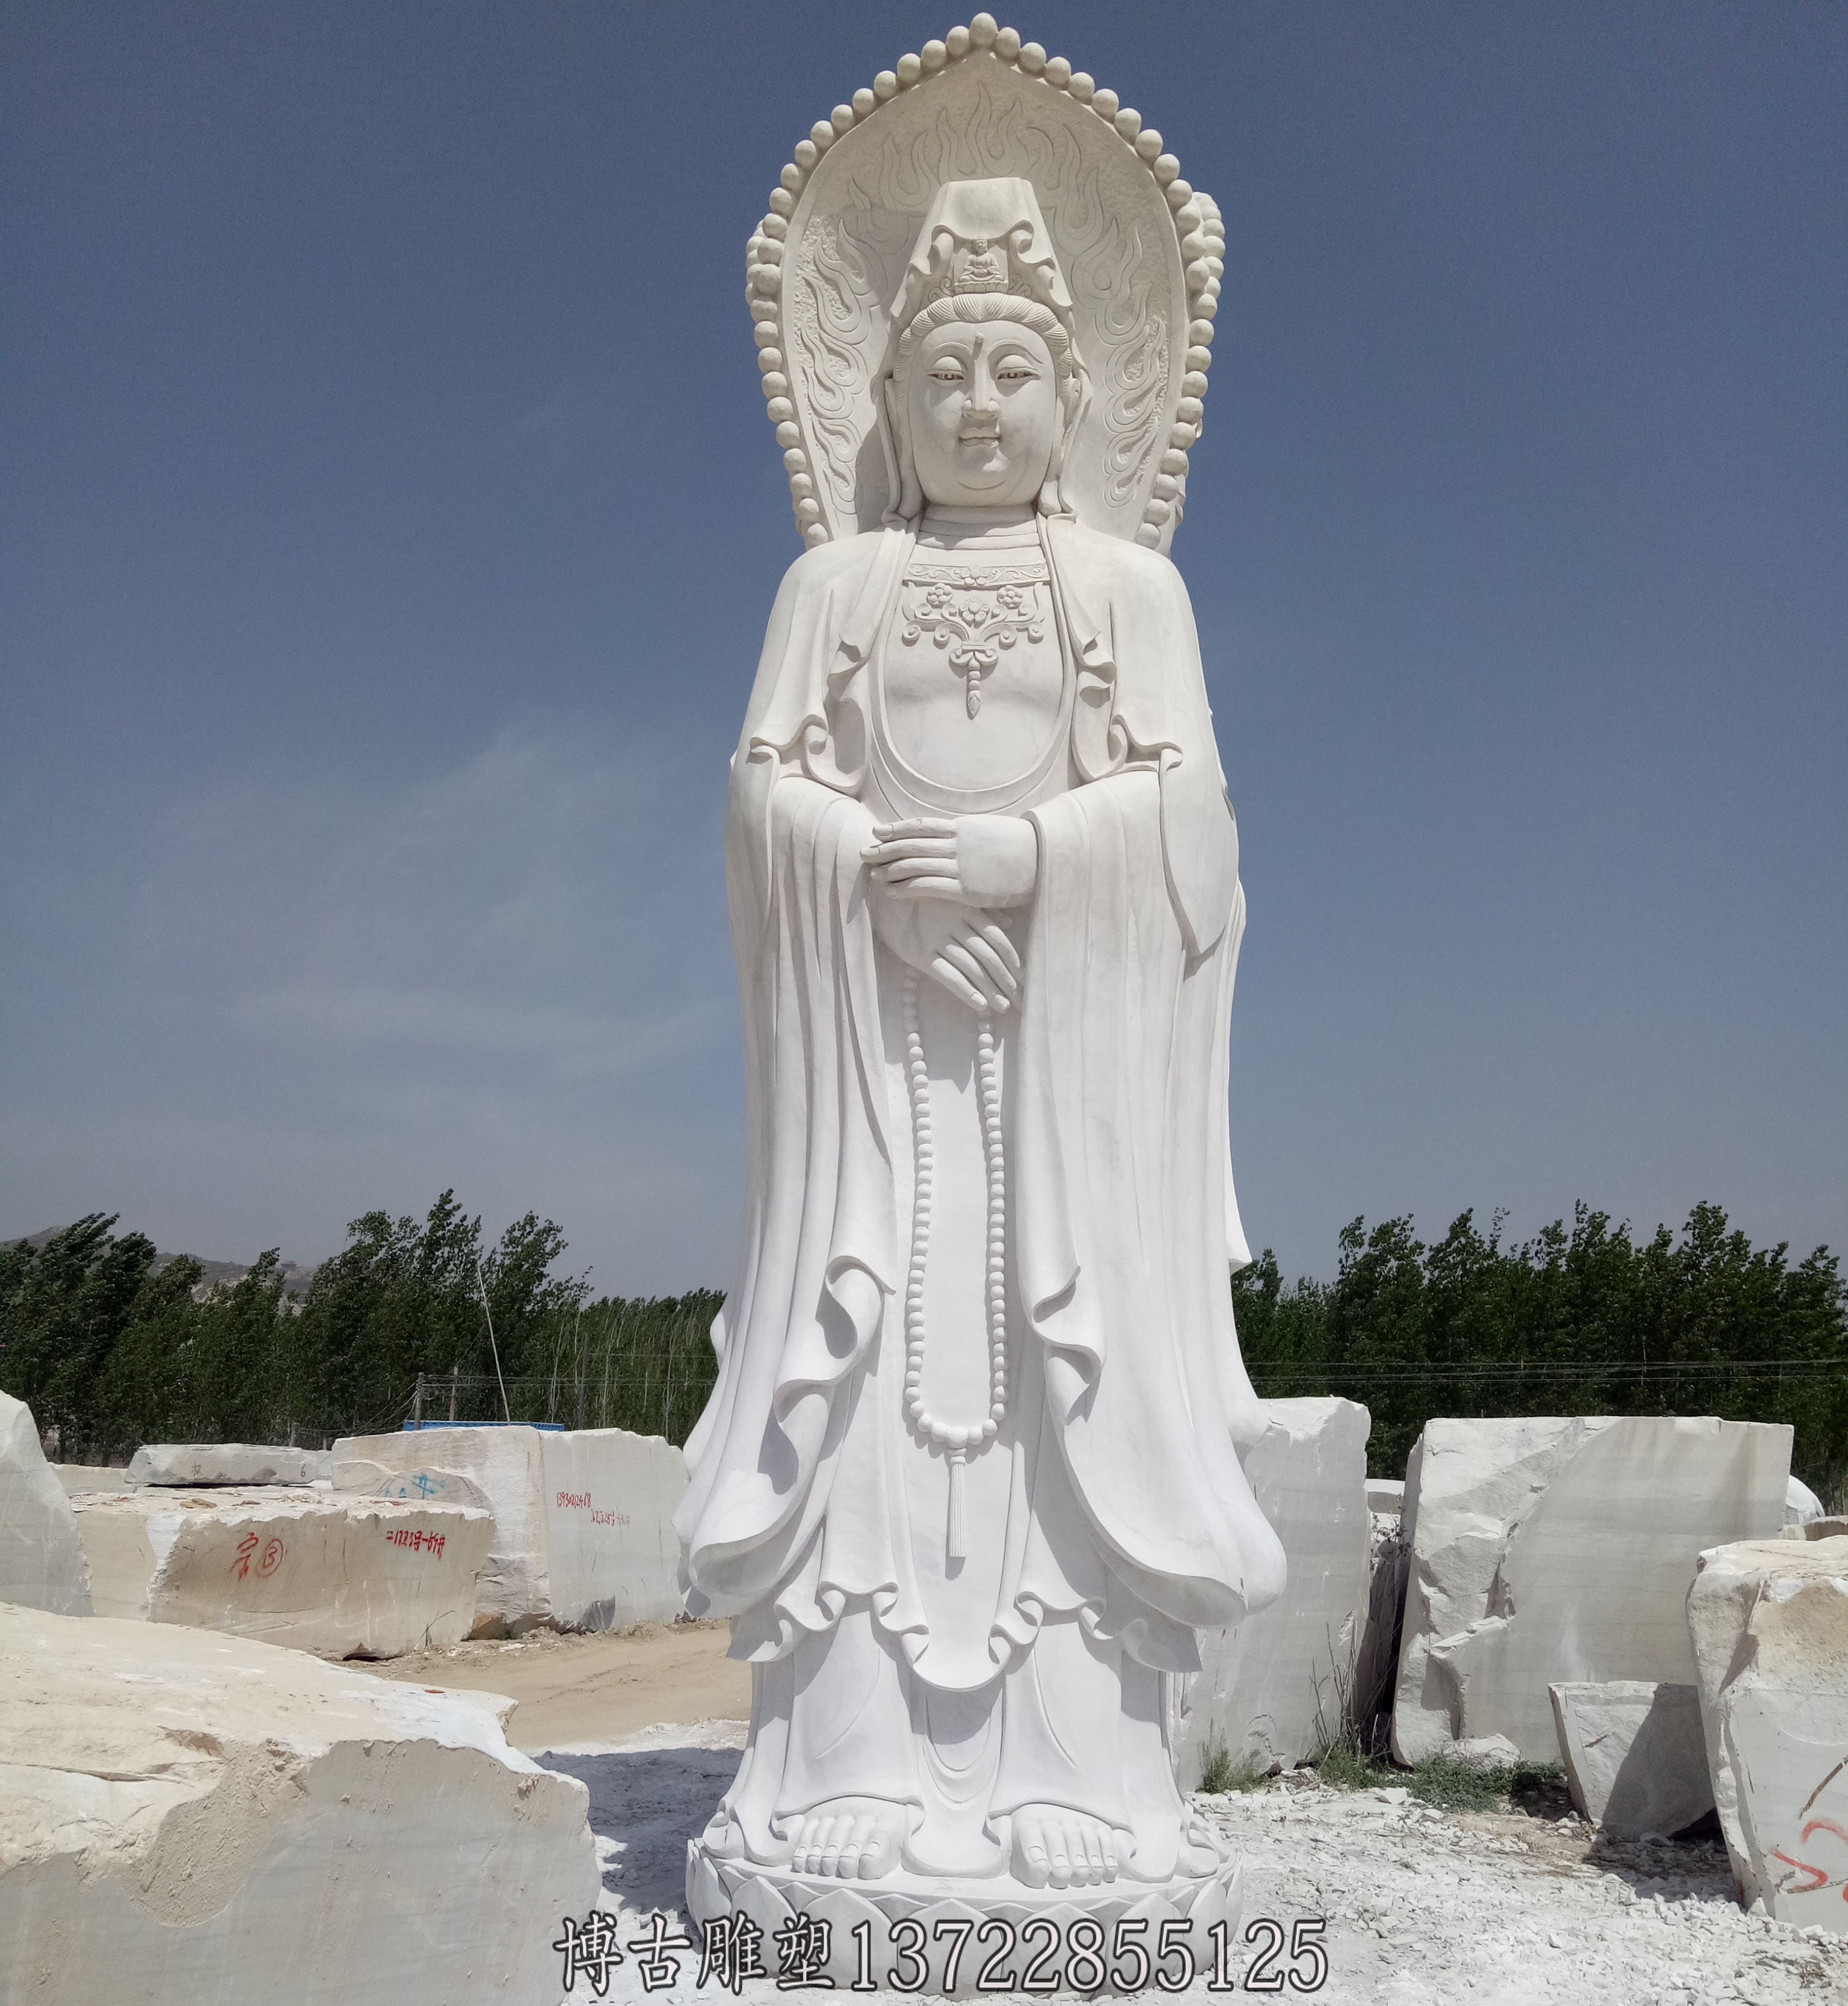 石雕观音是雕刻艺术种类的其中一种,中国制作佛像雕塑常用来放在寺庙